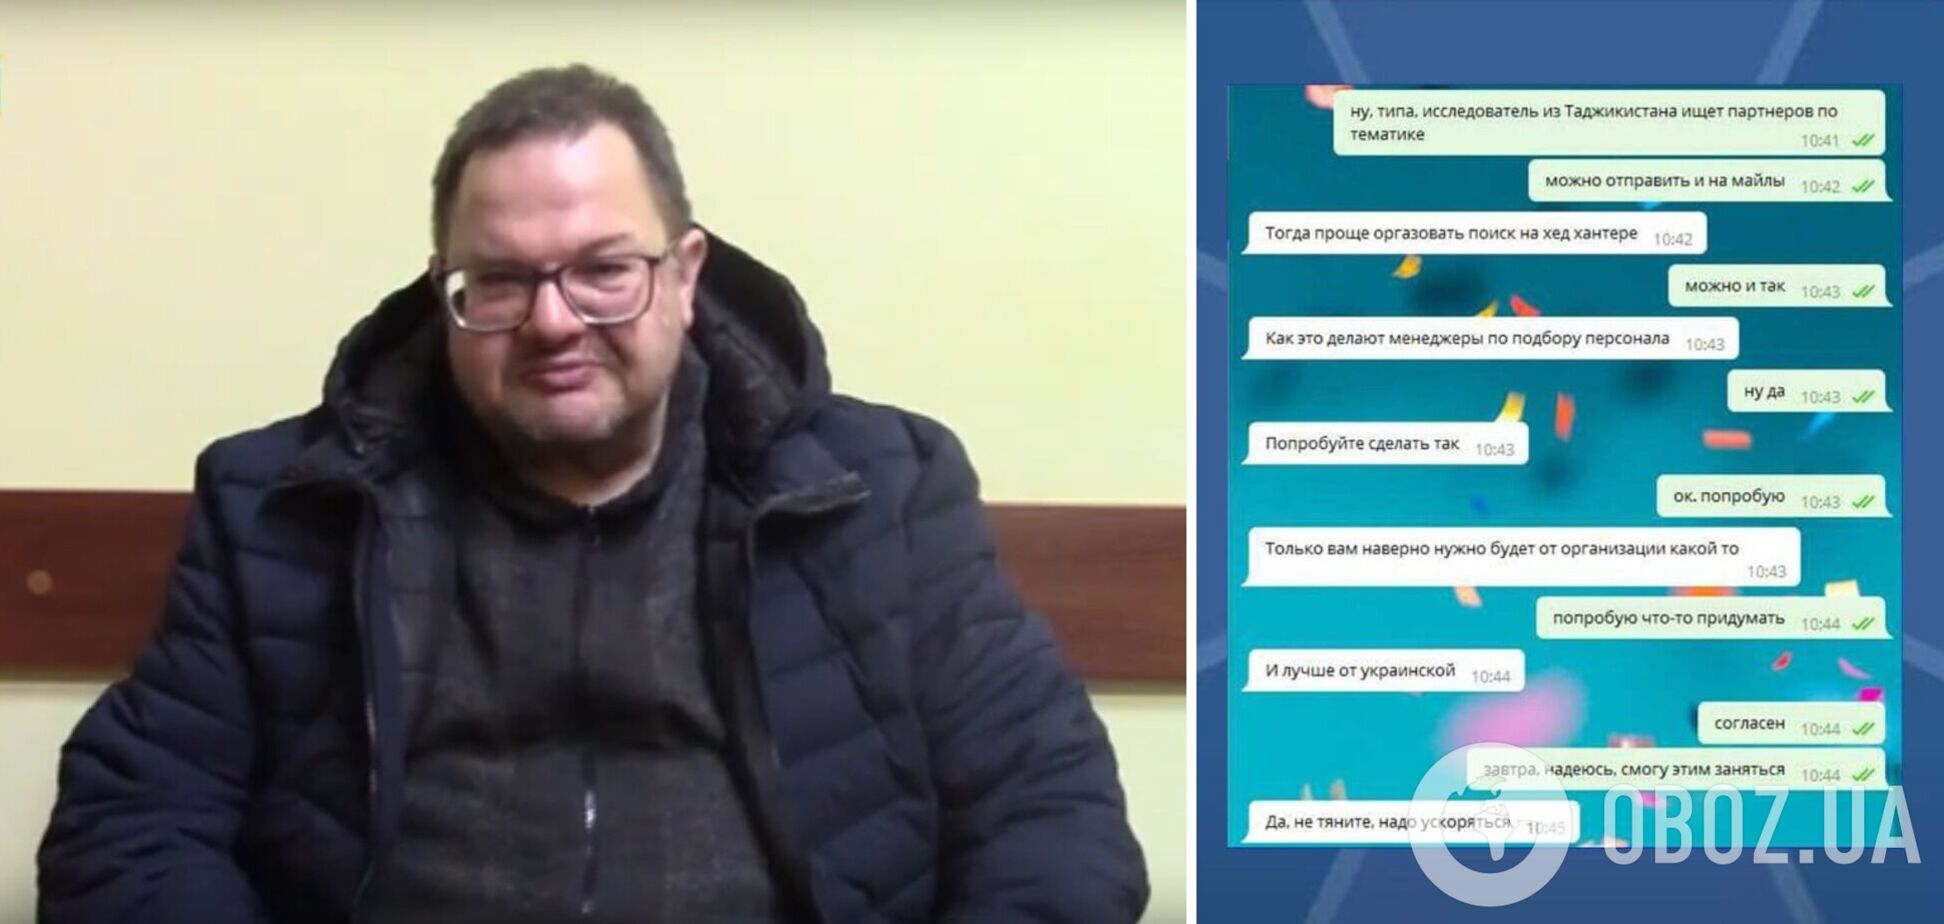 СБУ поймала агента ФСБ в Украине и вычислила его куратора. Видео